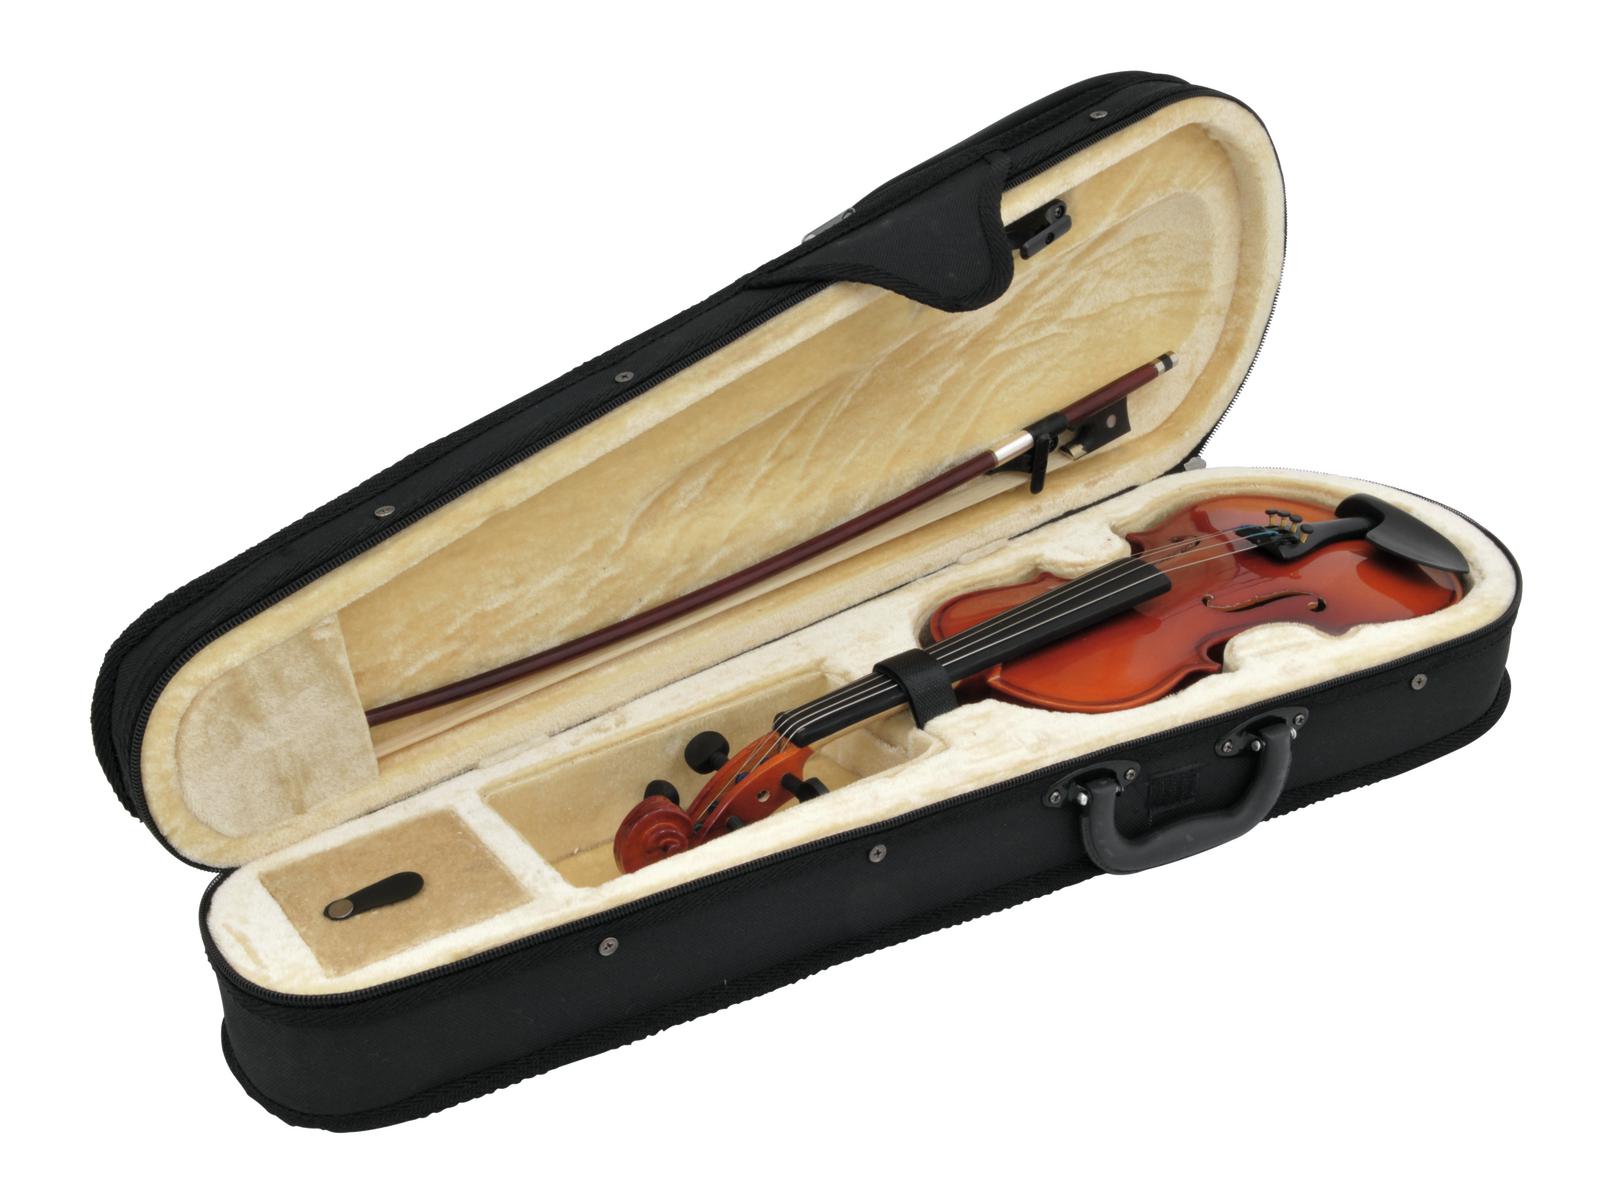 Чехлы для музыкальных инструментов. Artemis DVC-4-1 кейс для скрипки. Fvc41-1/2 футляр для скрипки размером 1/2, прямоугольный, Foix. Футляр для скрипки ак47. Футляр для скрипки Symphony 1/2 №16.